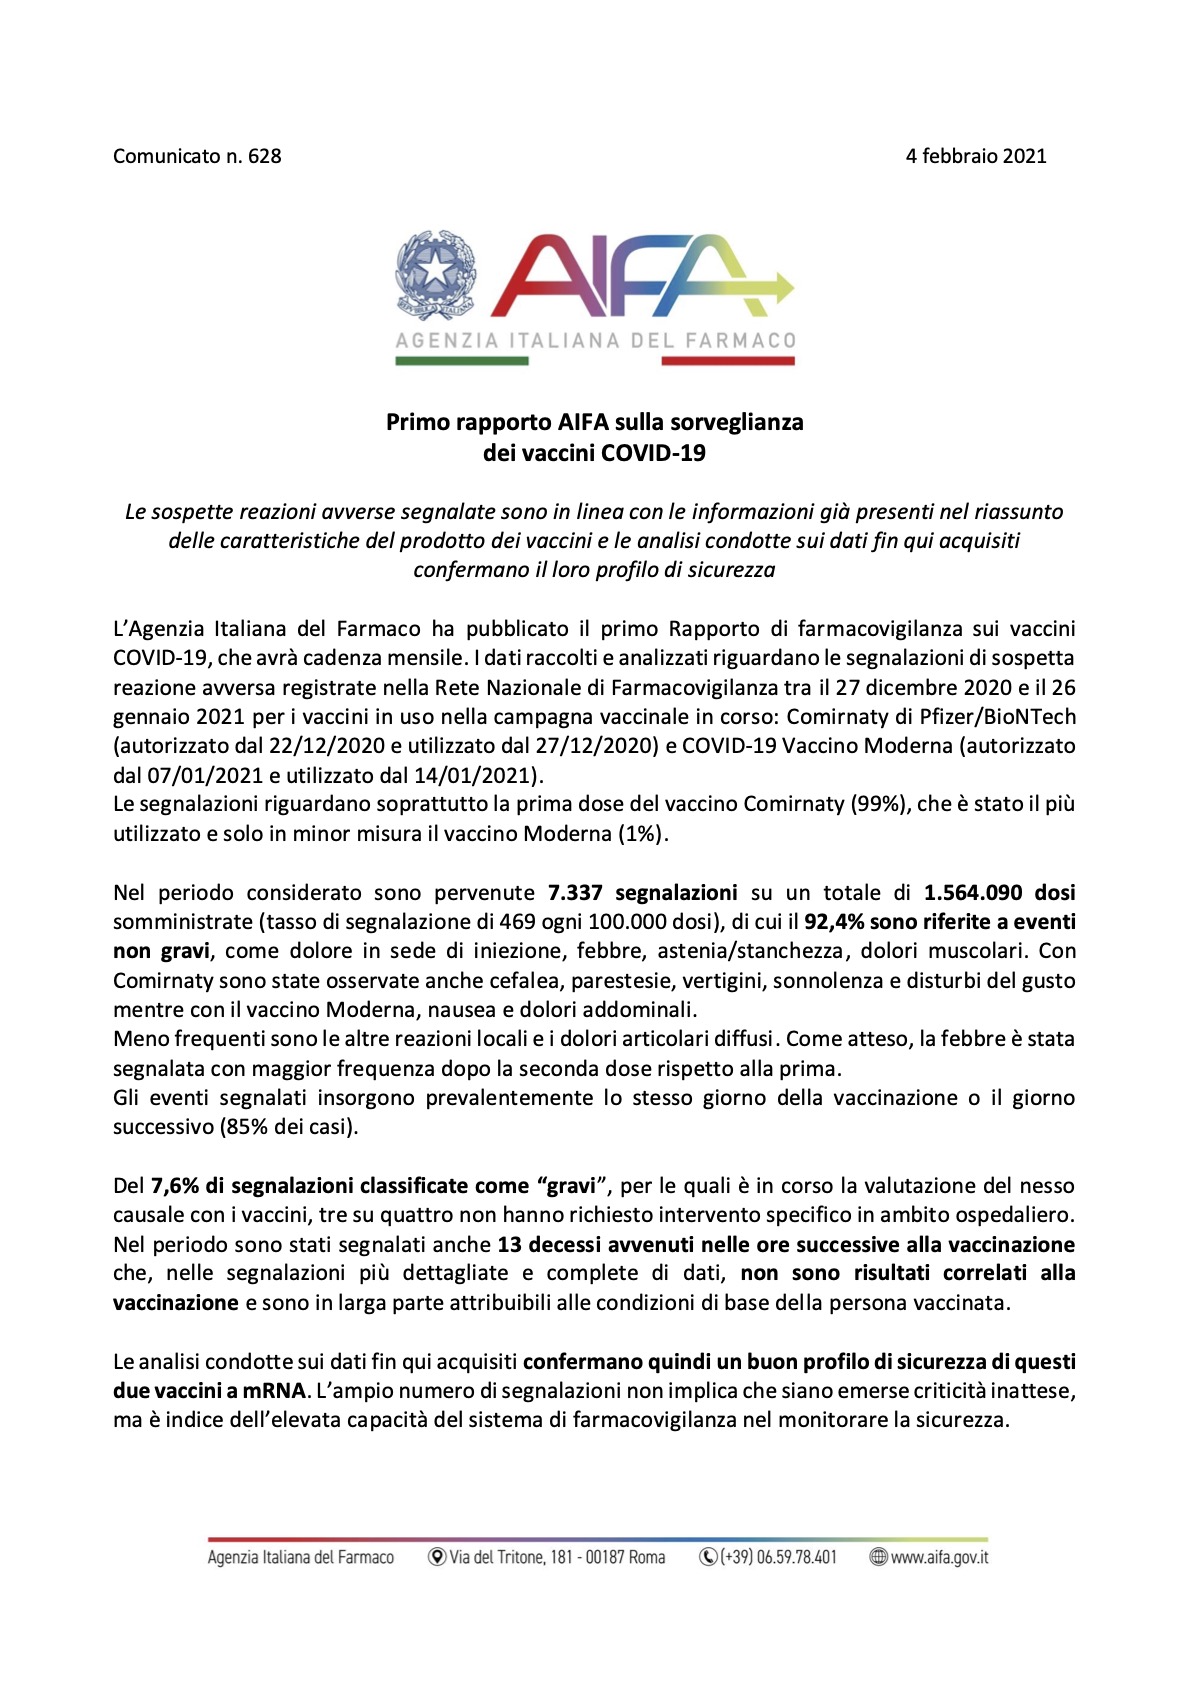 Aifa: Erste Daten zu unerwünschten Ereignissen bei Covid-19-Impfstoffen